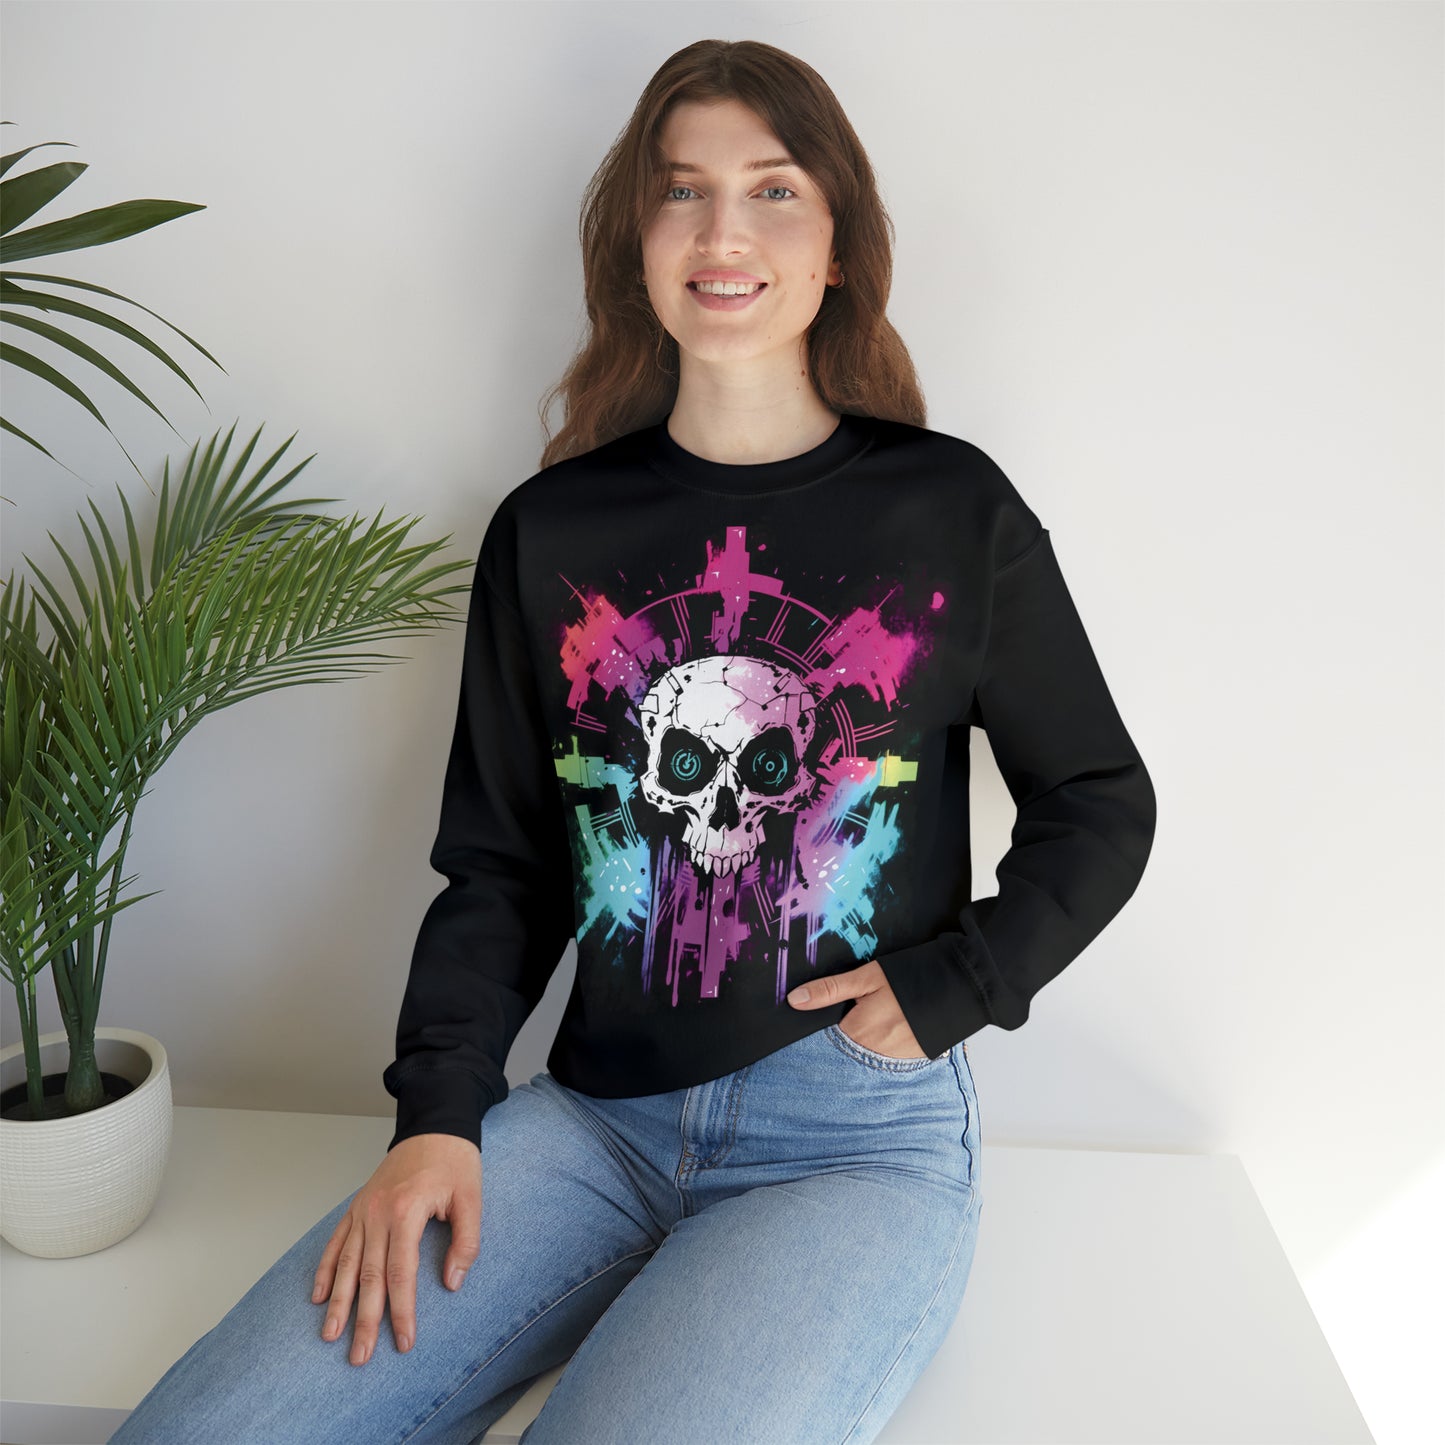 Skull, Color, Pink, Women and Men Unisex, Crew Neck Sweatshirt